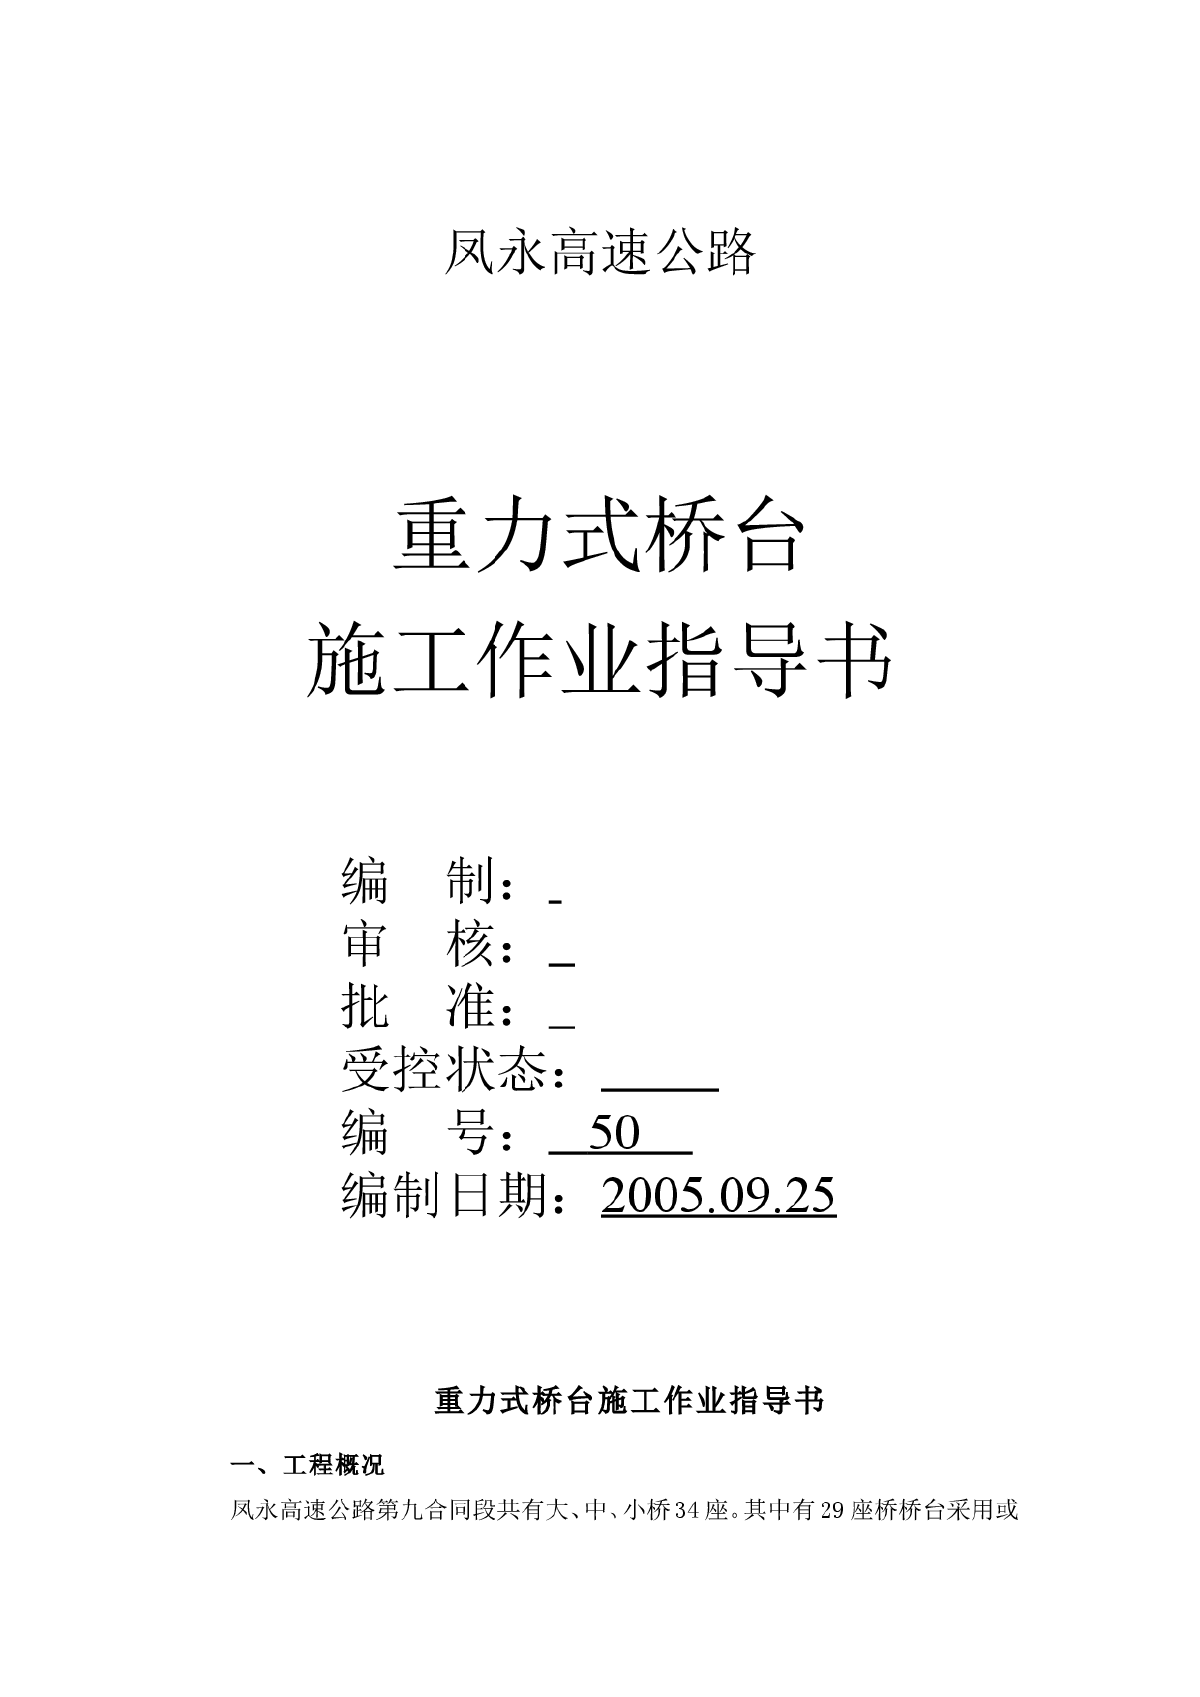 凤永高速重力式桥台施工作业指导书